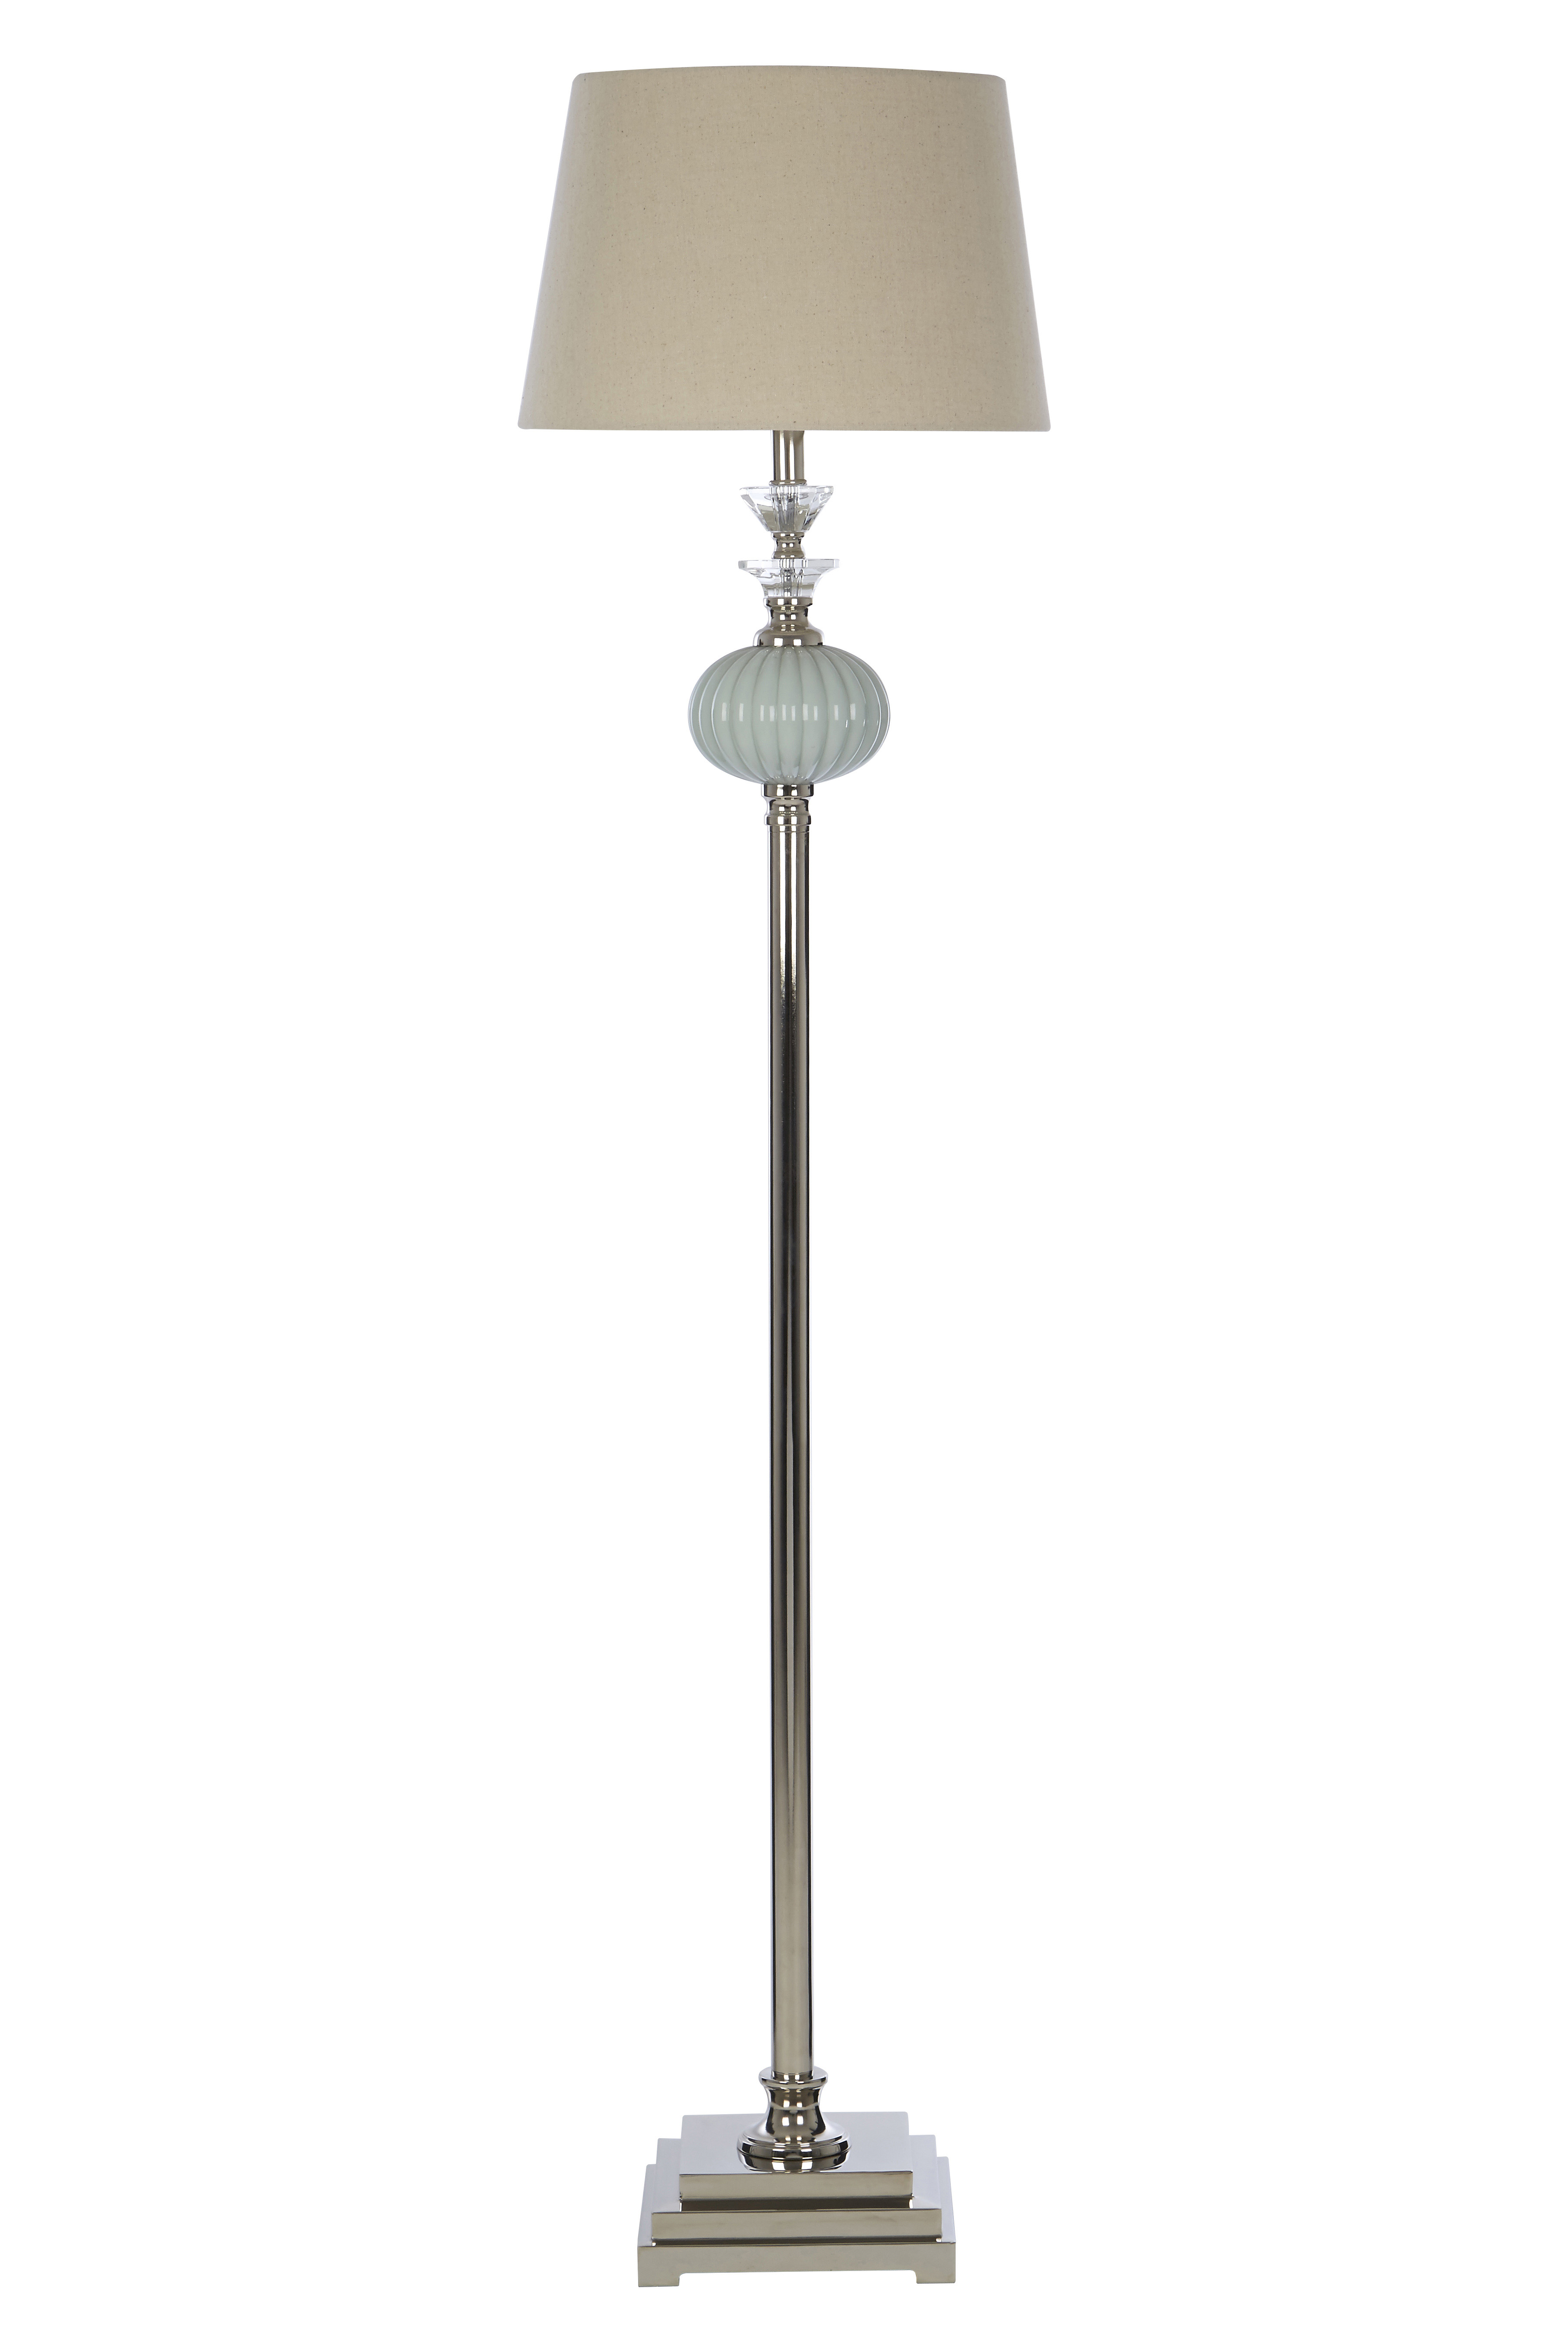 Ulyana Floor Lamp With Eu Plug within size 3600 X 5400